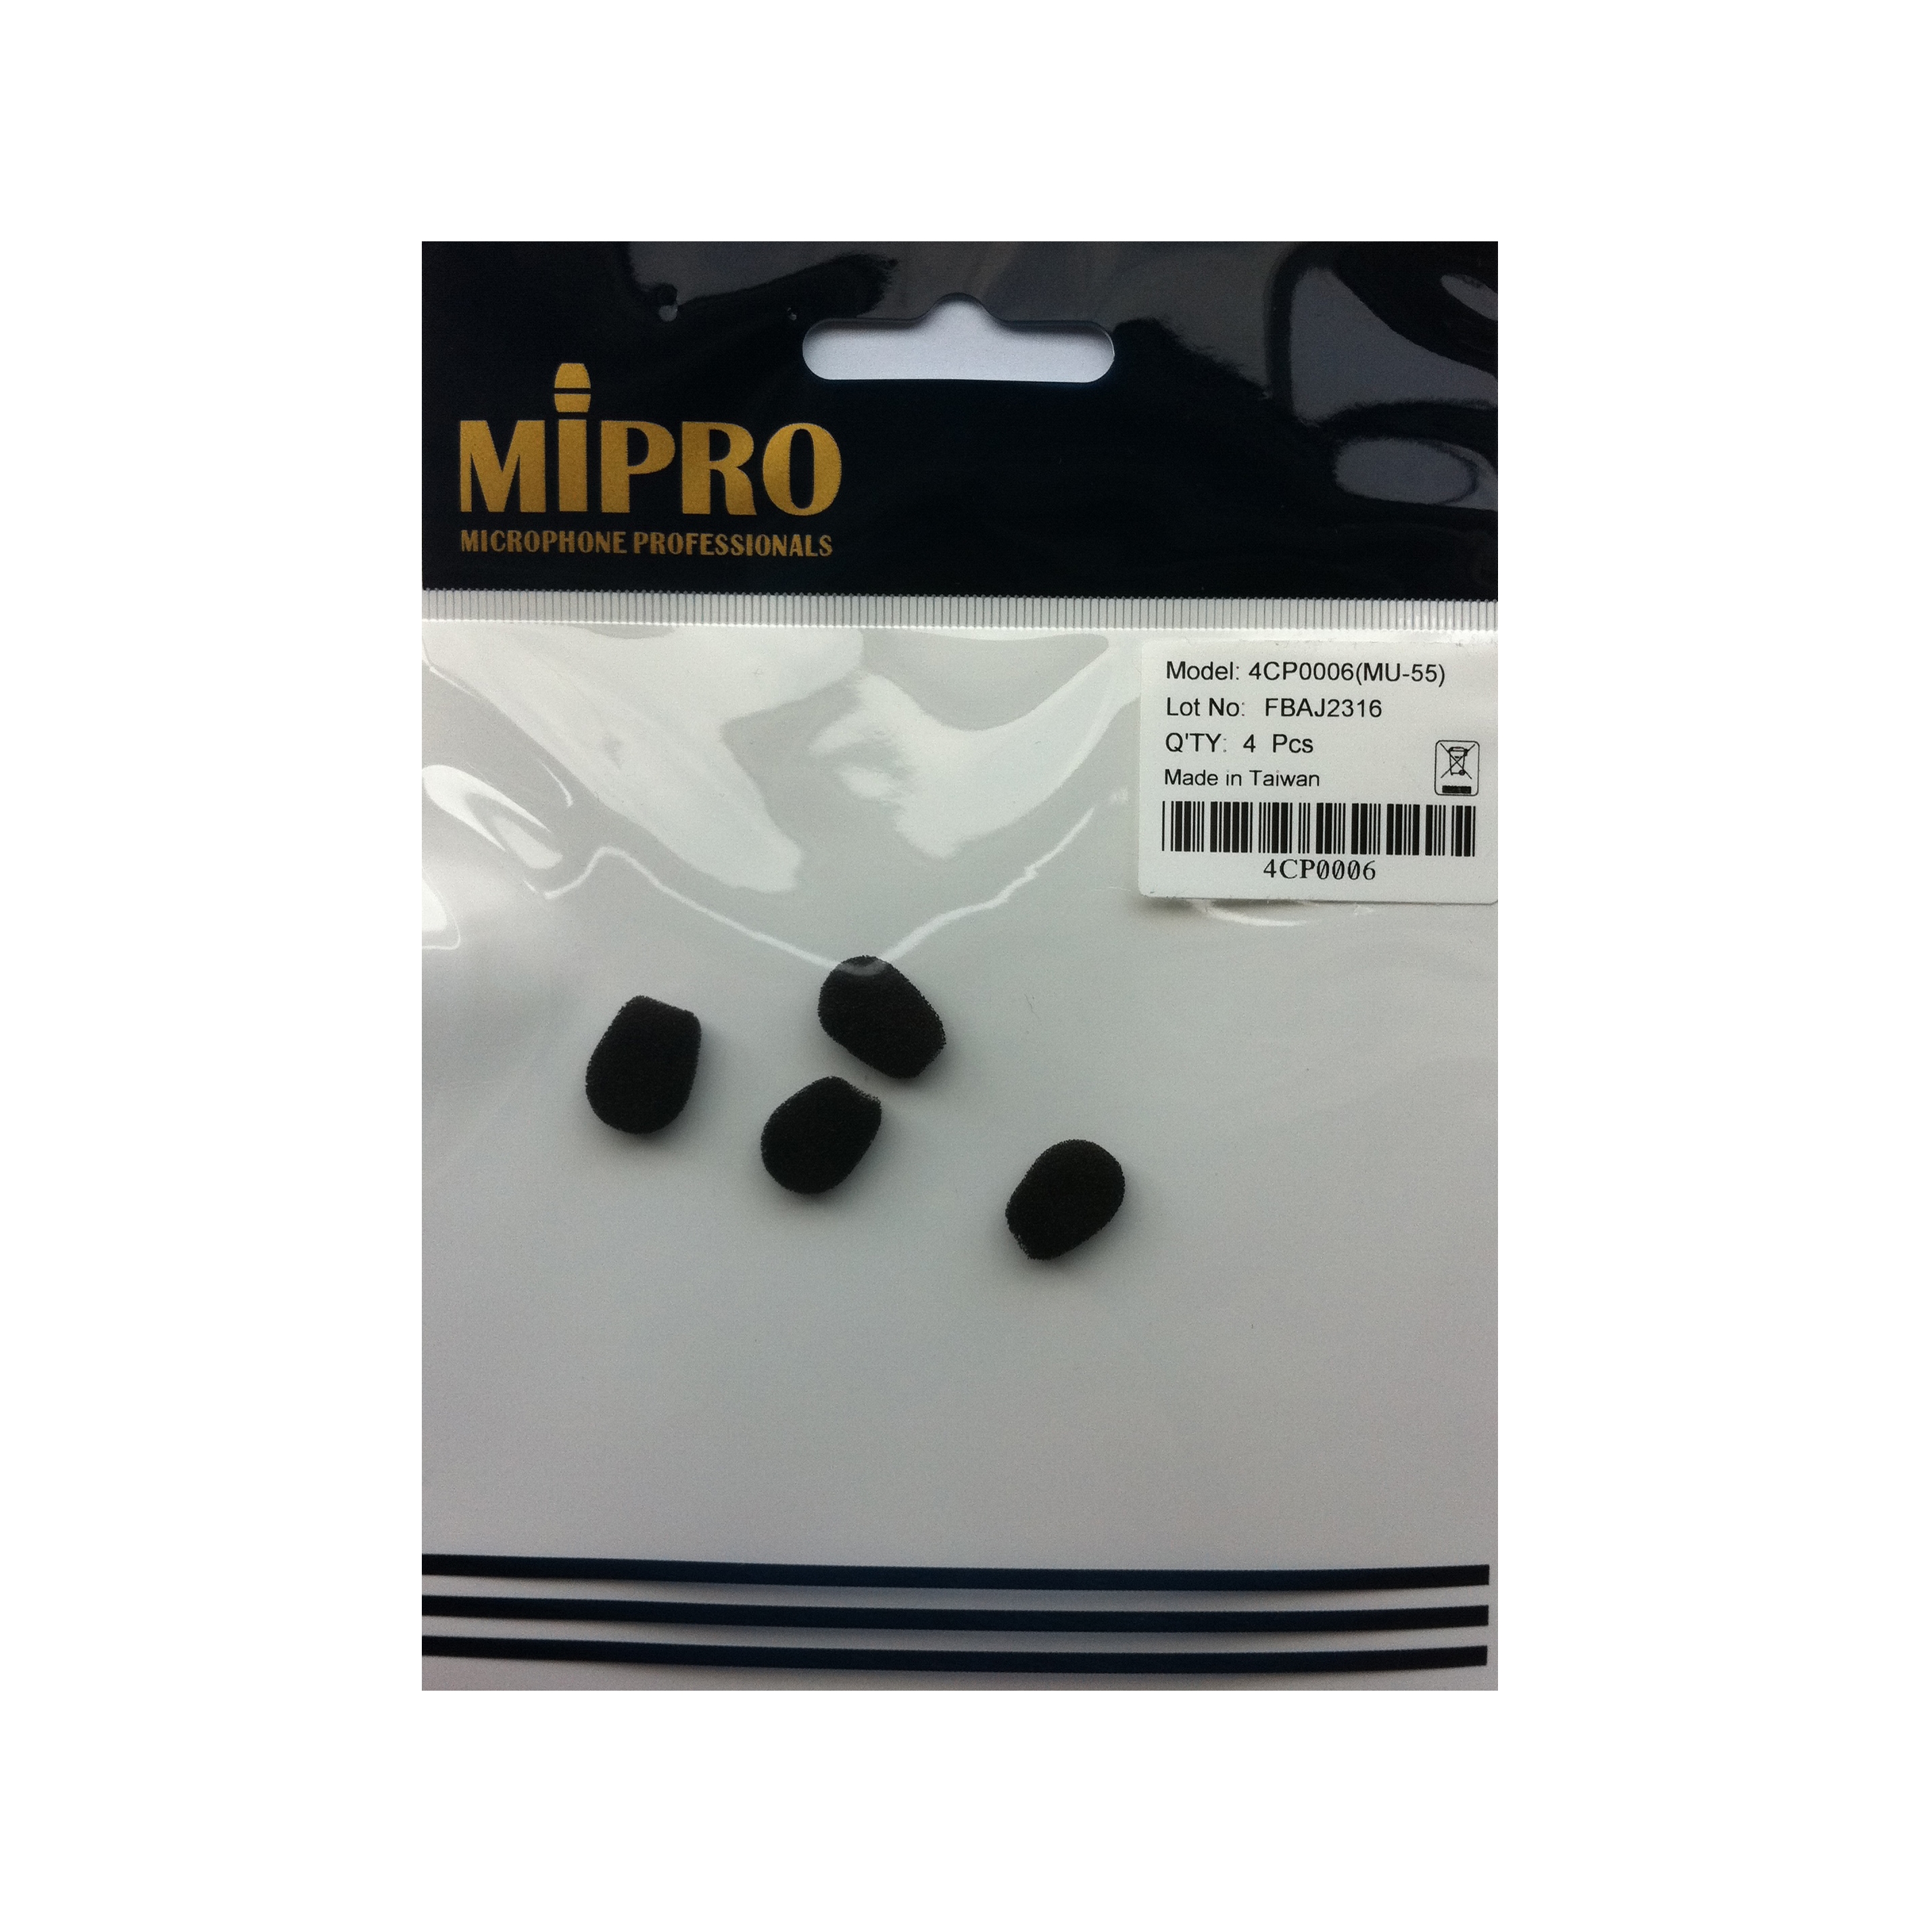 MiPro 4CP0006 Foam Pop Shield for MiPro MU-55L & MU-55HN Headset Microphones (Pack of 4) - Black